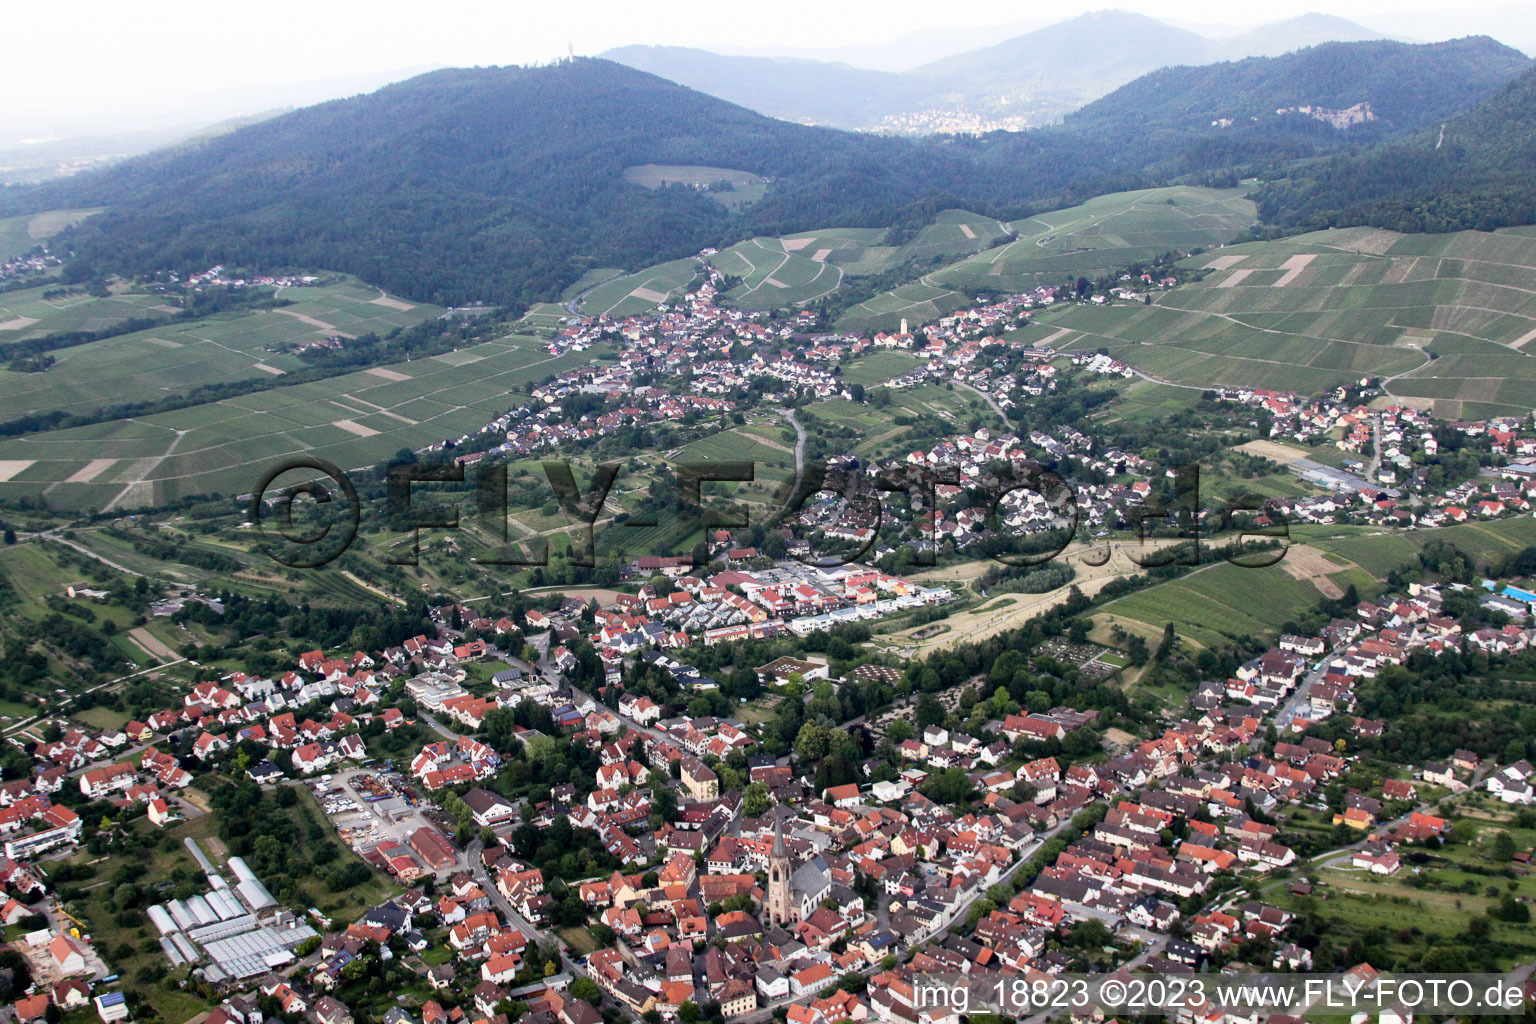 Steinbach im Bundesland Baden-Württemberg, Deutschland aus der Luft betrachtet